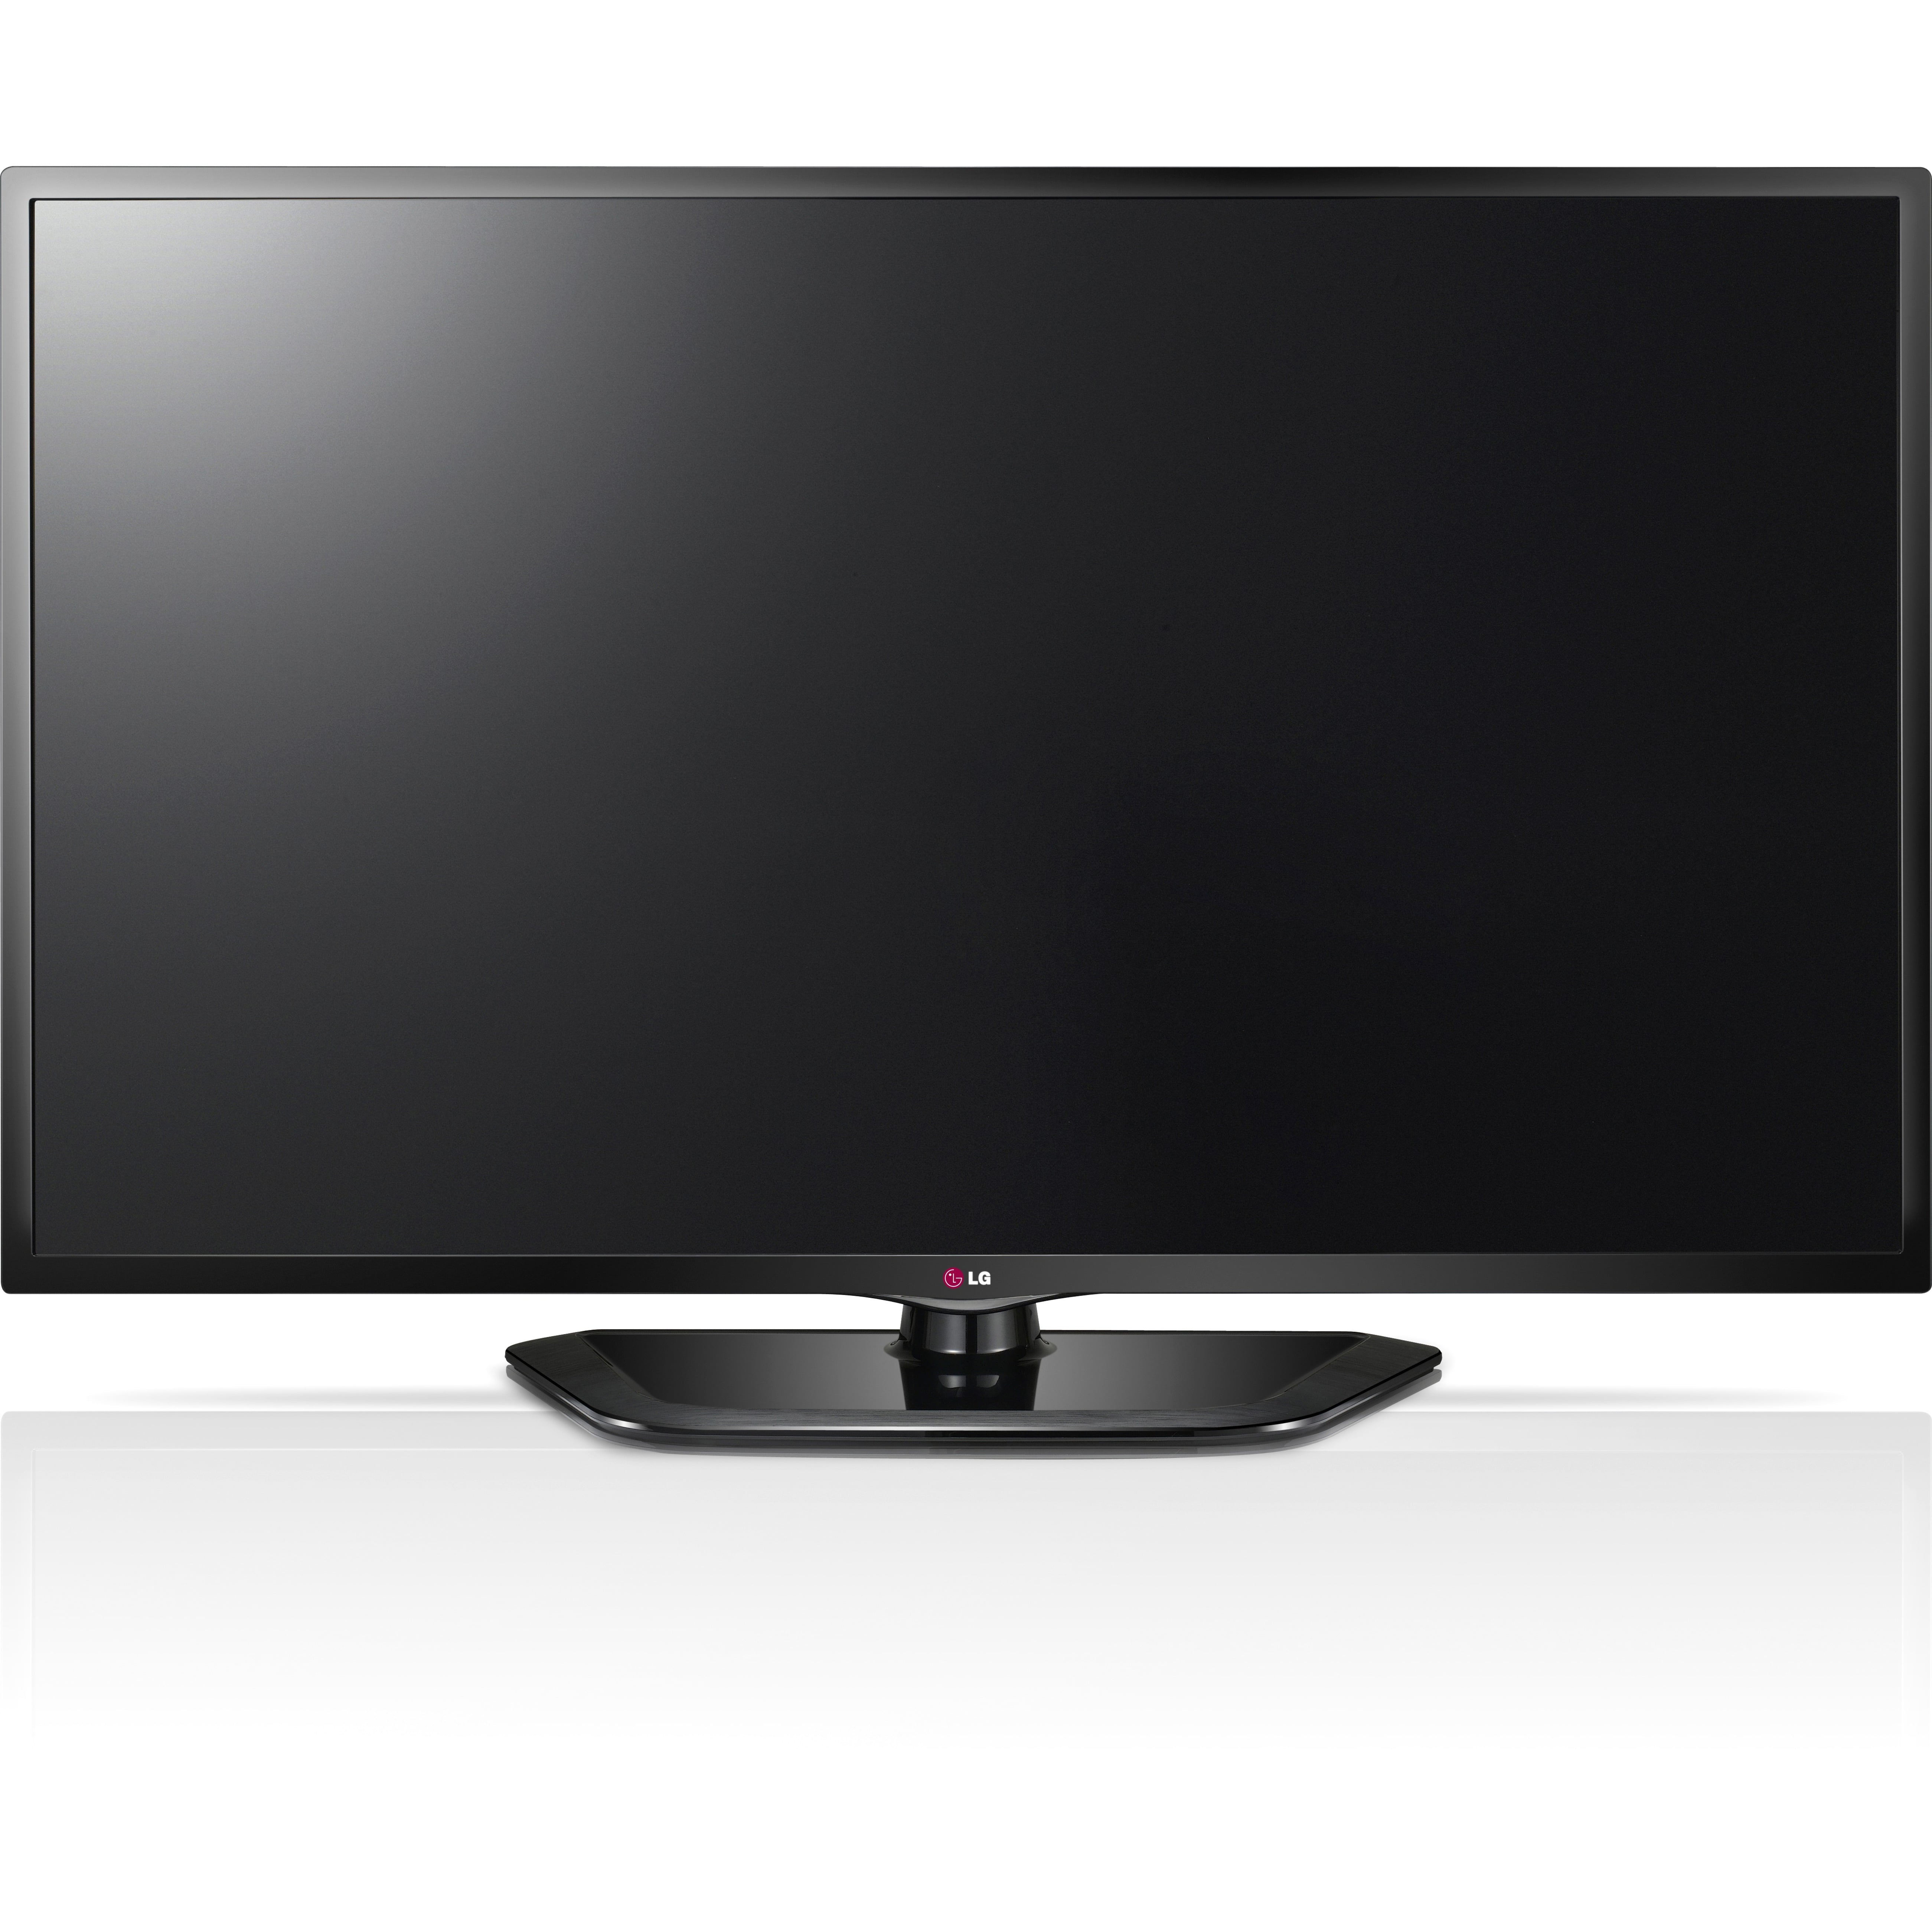 Телевизоры lg 2016. LG 47ld750. Телевизор LG 37lg6000 37". LG Smart TV 42 дюйма. Телевизор LG 42lh4900 42".